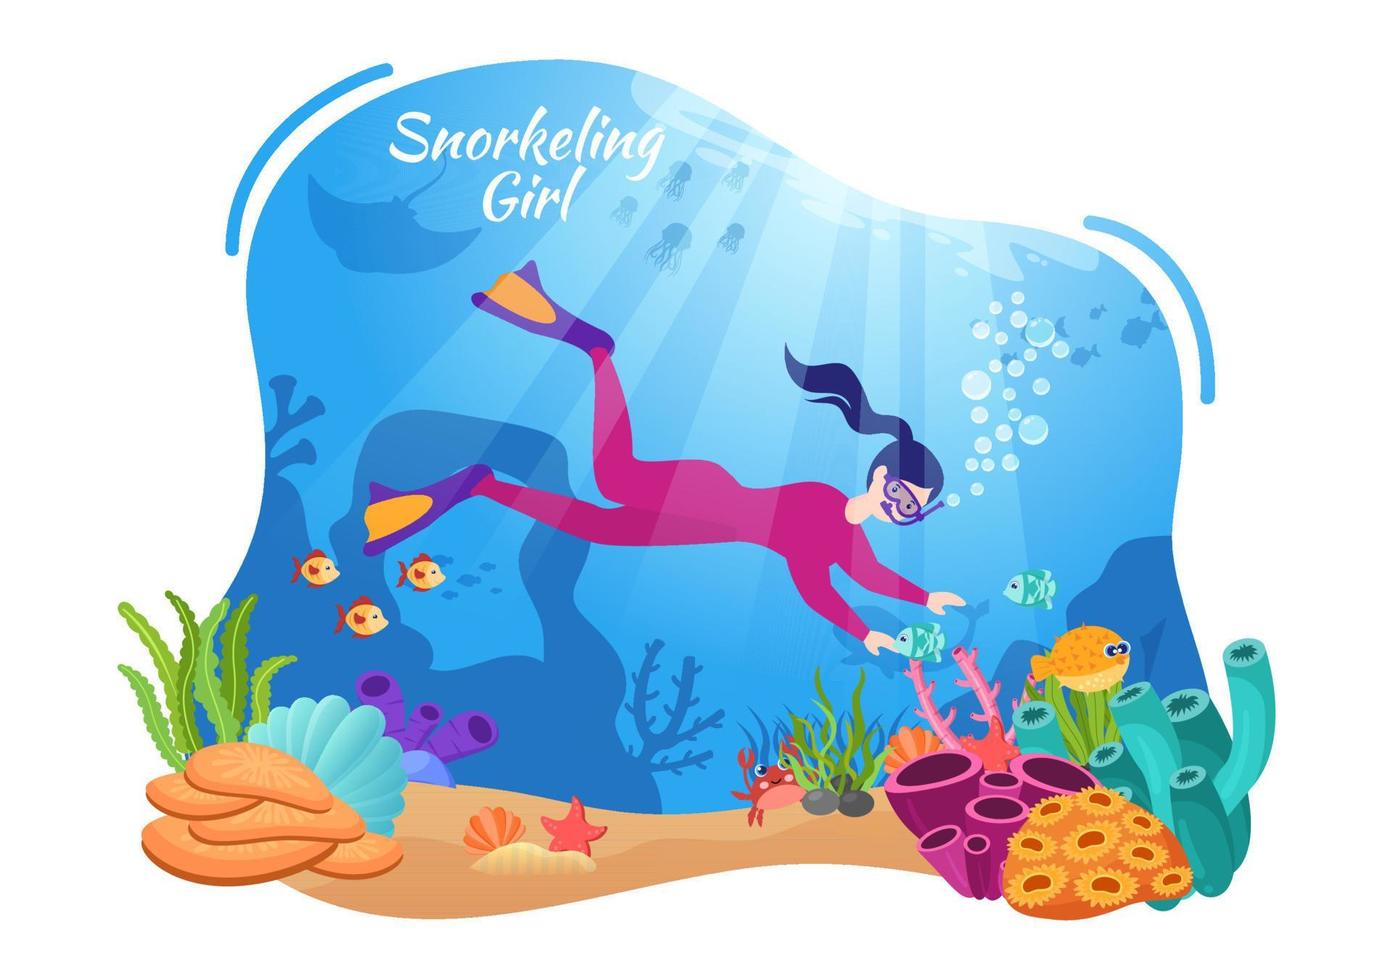 garota de mergulho com natação subaquática explorando o mar, recifes de corais ou peixes no oceano em ilustração vetorial de desenho animado plano vetor